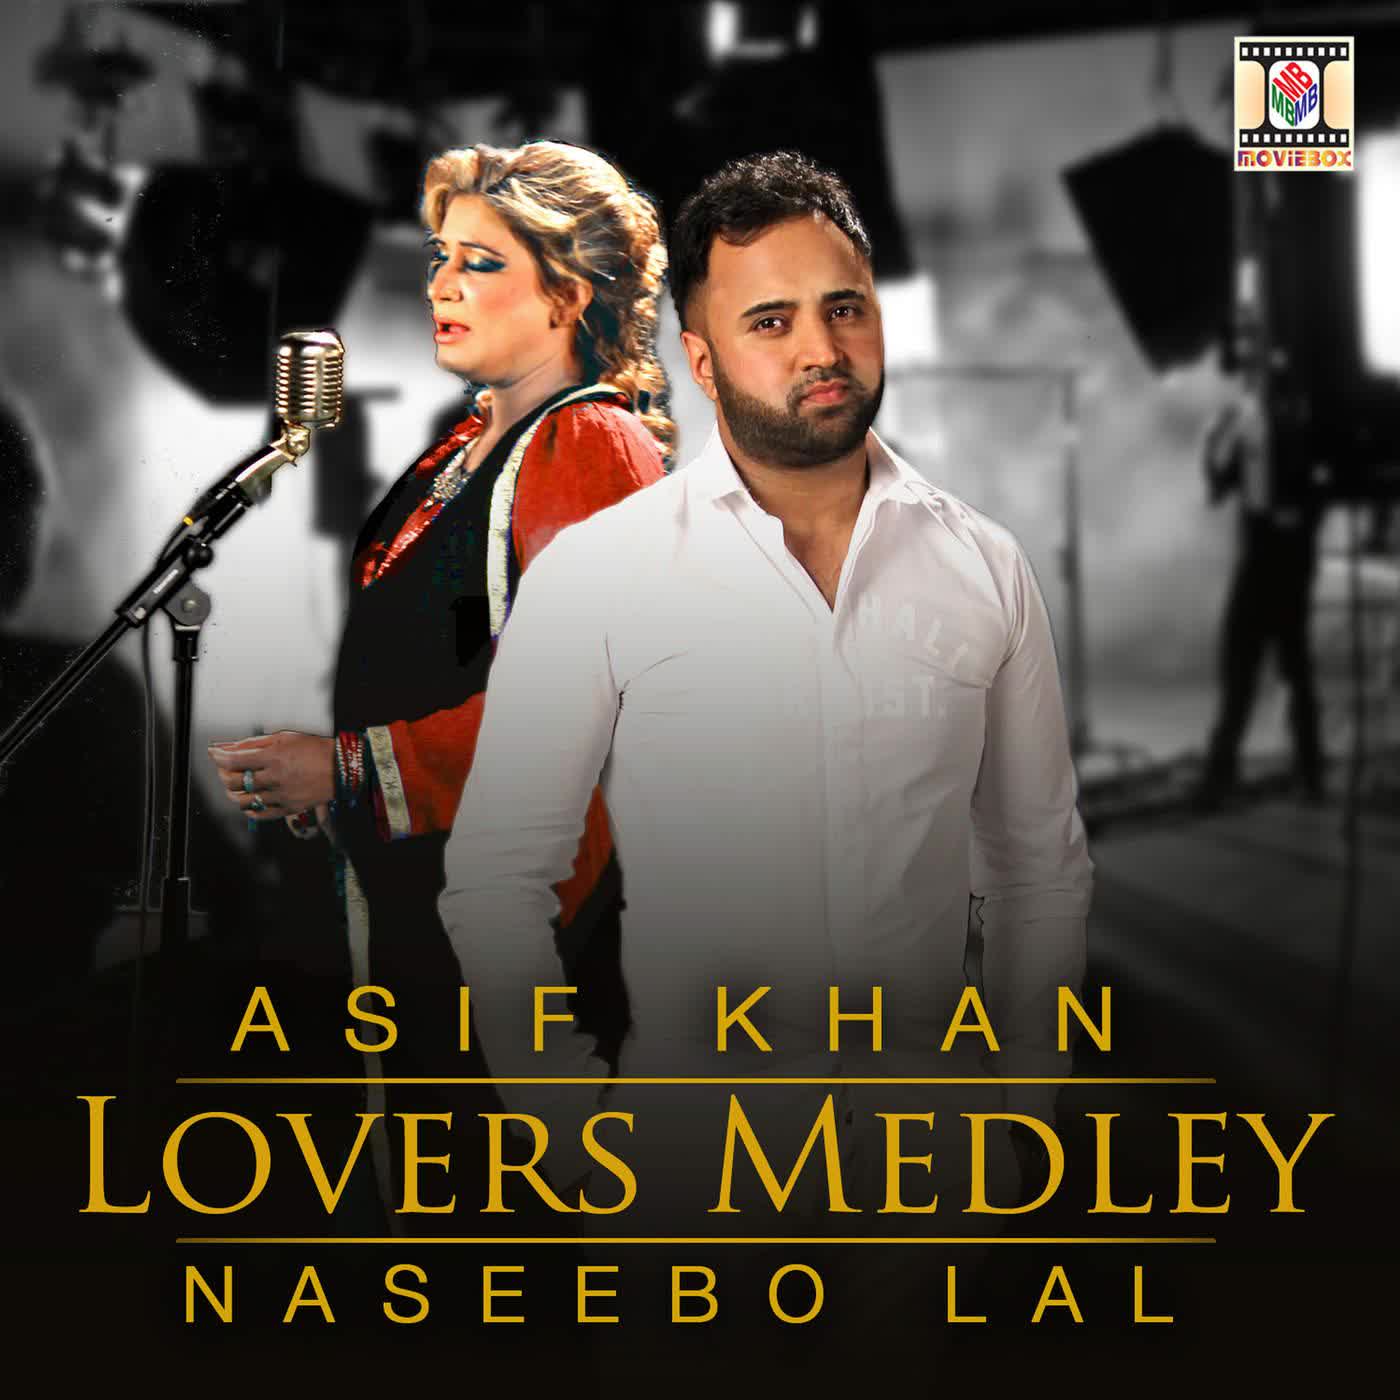 Lovers Medley Asif Khan,Naseebo Lal Mp3 Song